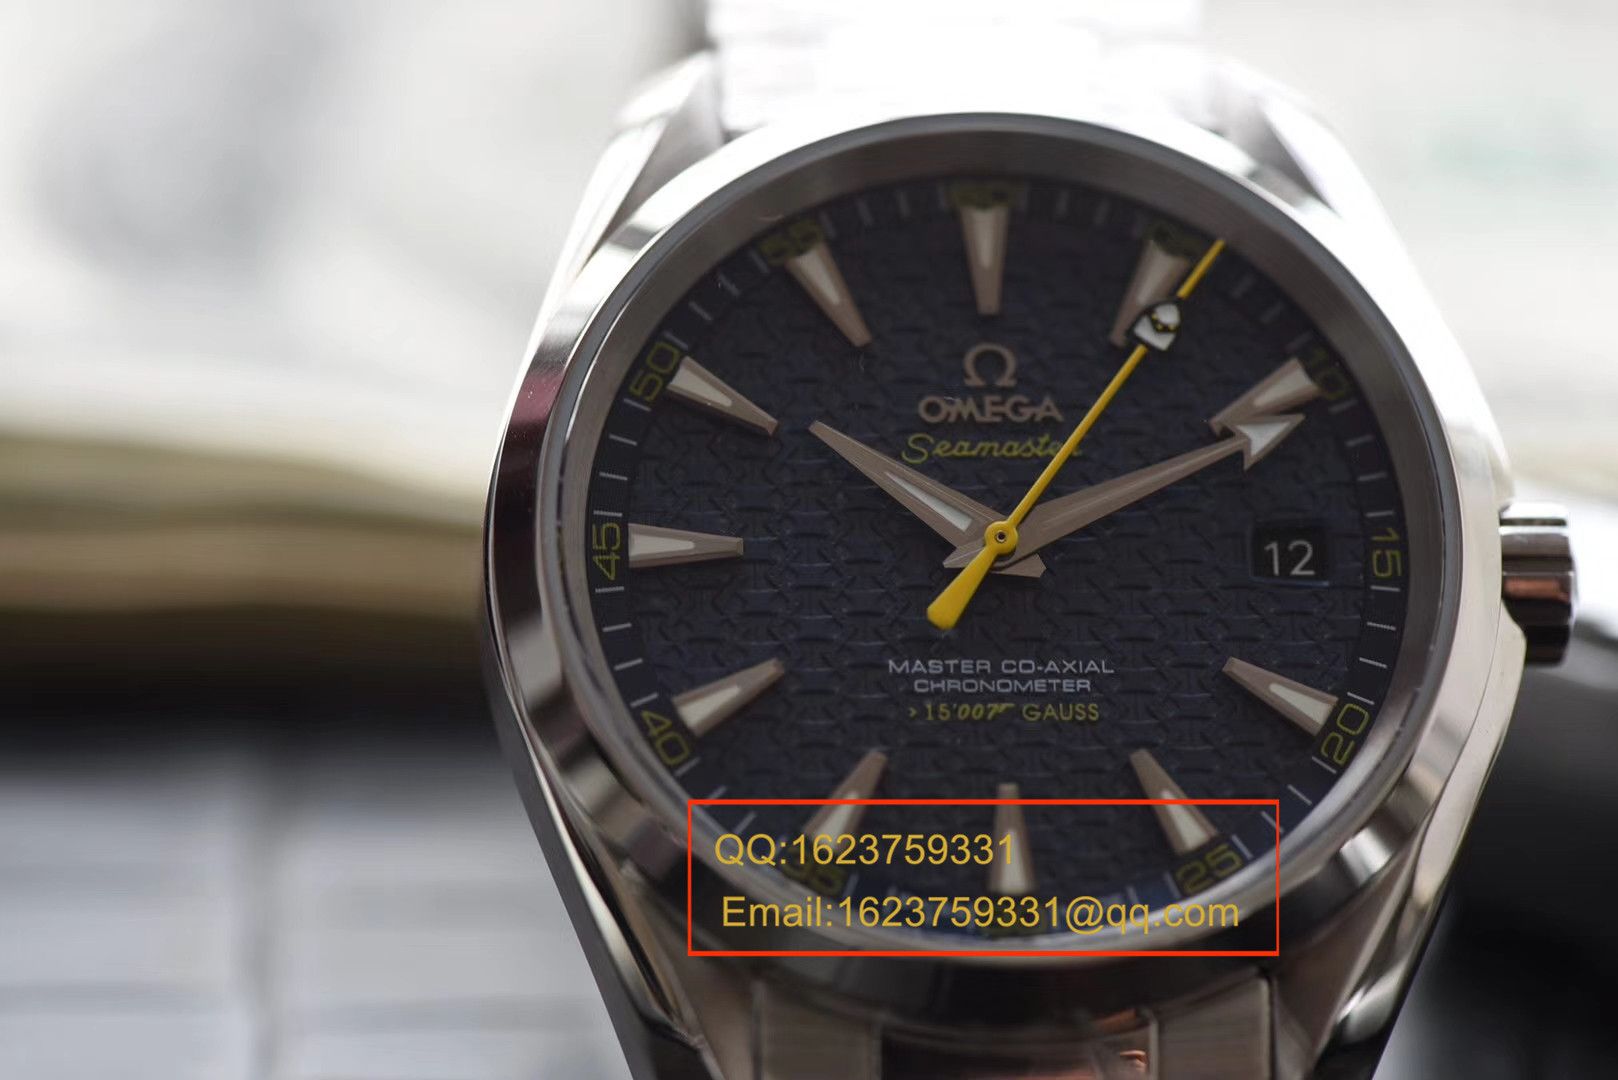 【KW一比一超A高仿手表】欧米茄海马系列 007詹姆斯邦德限量版 231.10.42.21.03.004机械腕表 